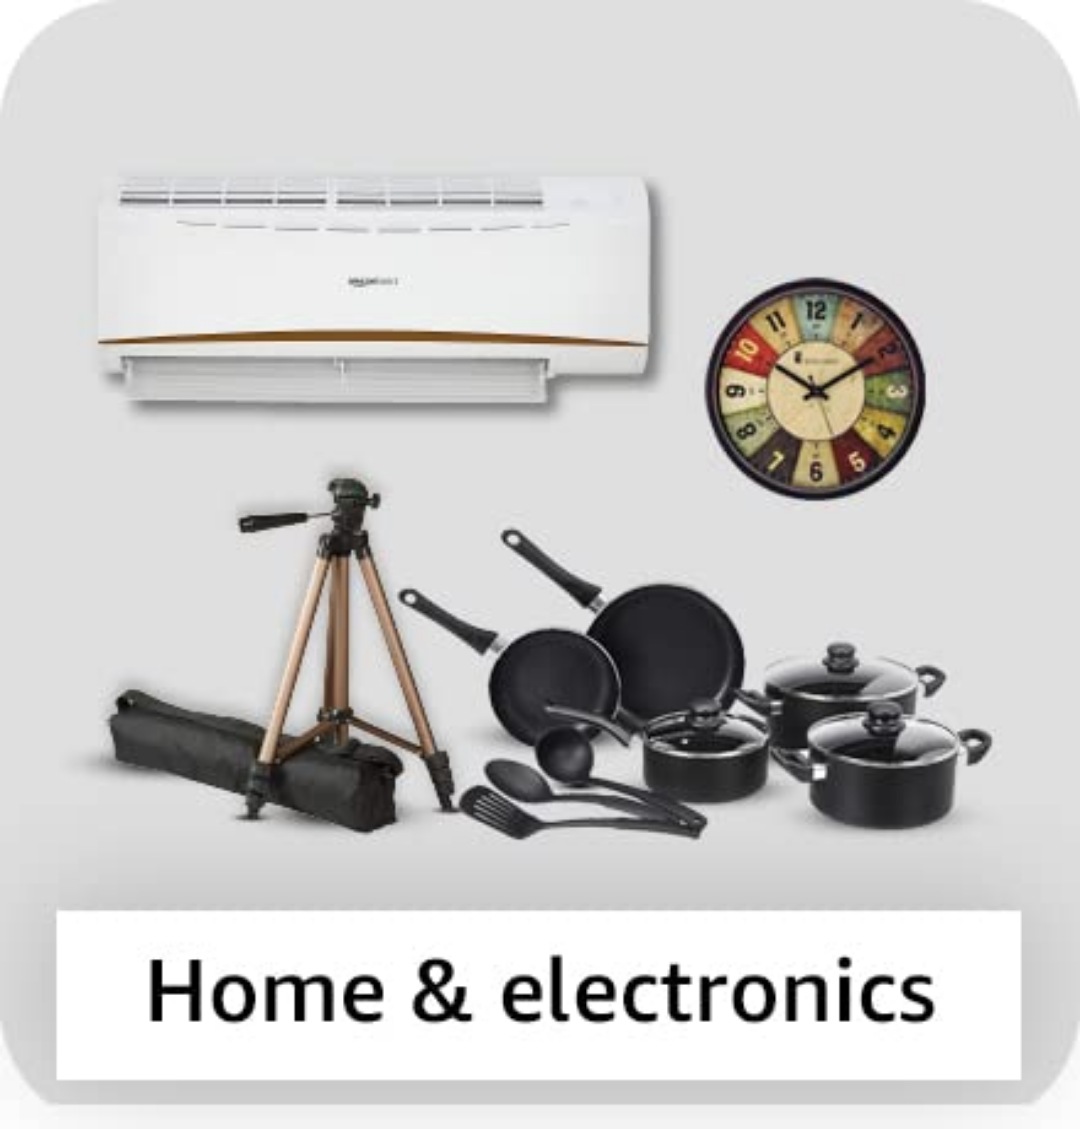 Home & electronics